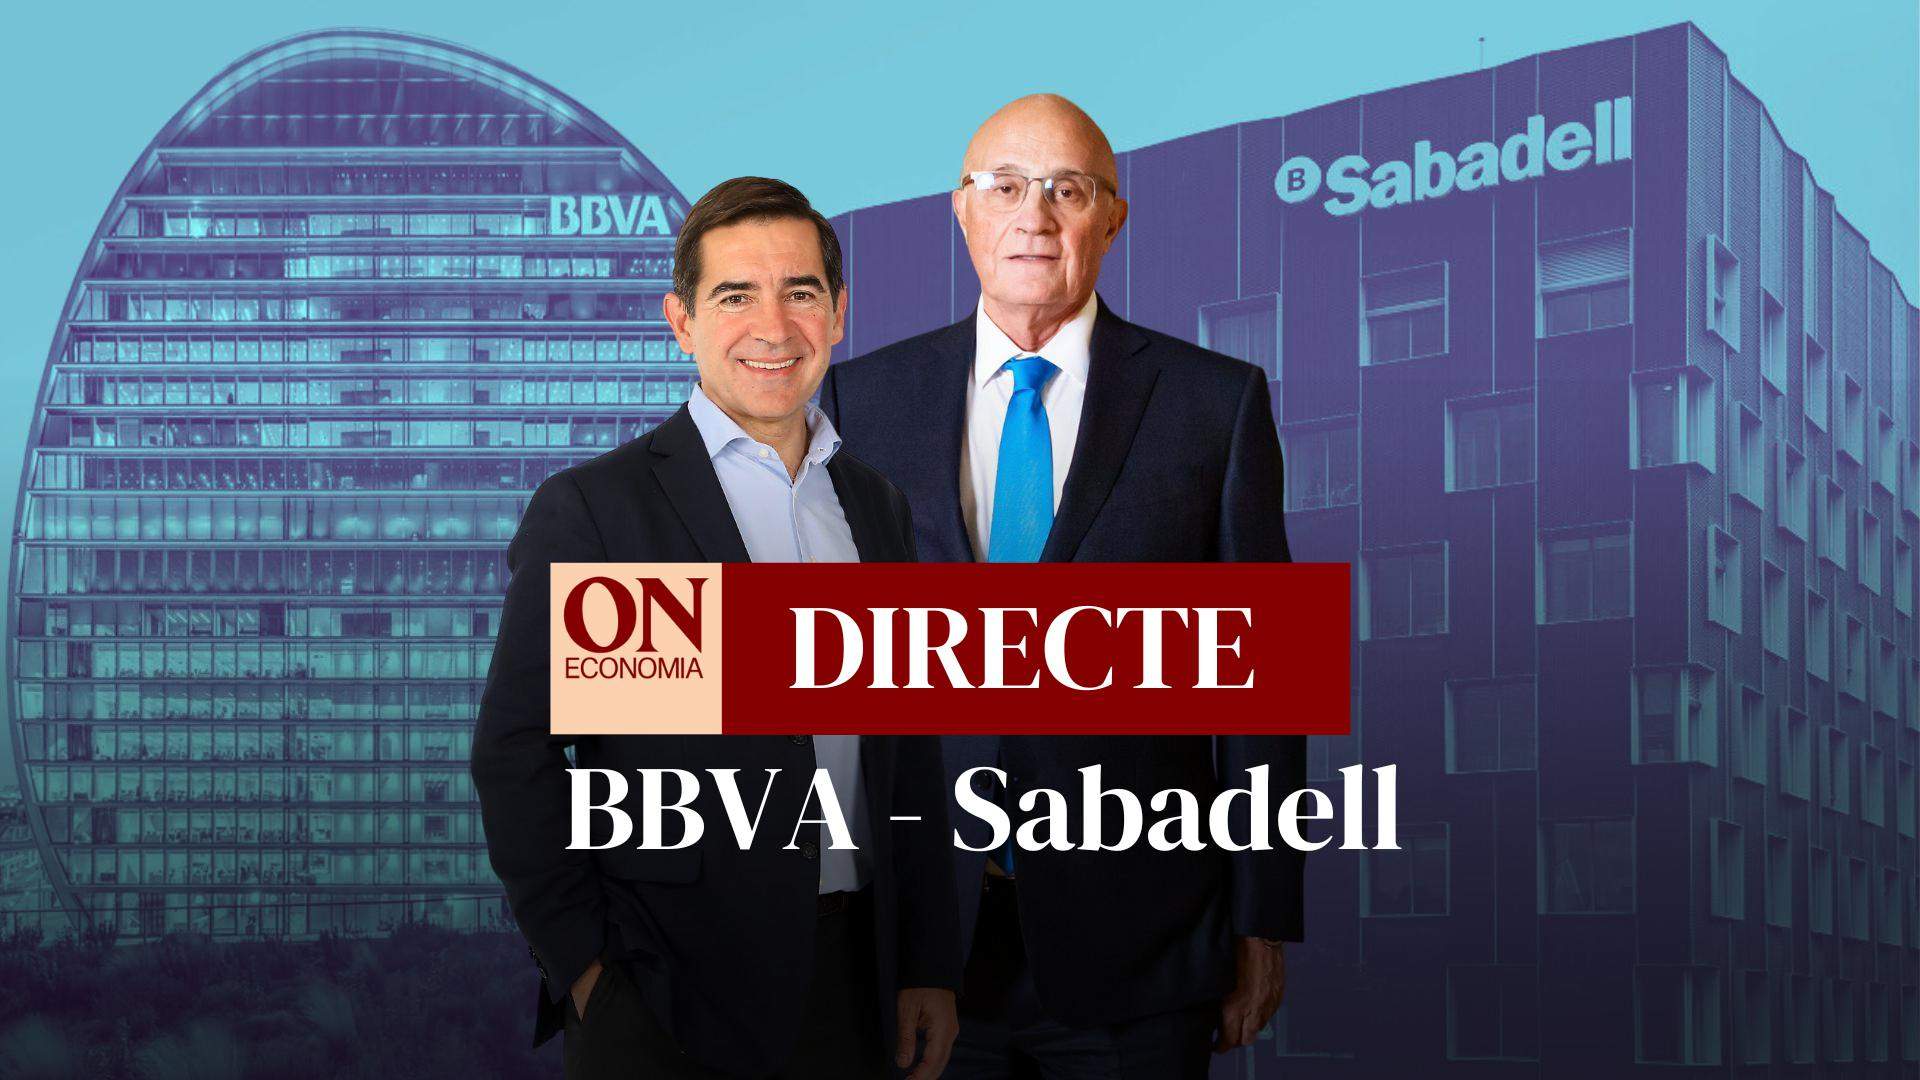 El BBVA llança una opa hostil sobre el Banc Sabadell, DIRECTE | Reaccions i última hora